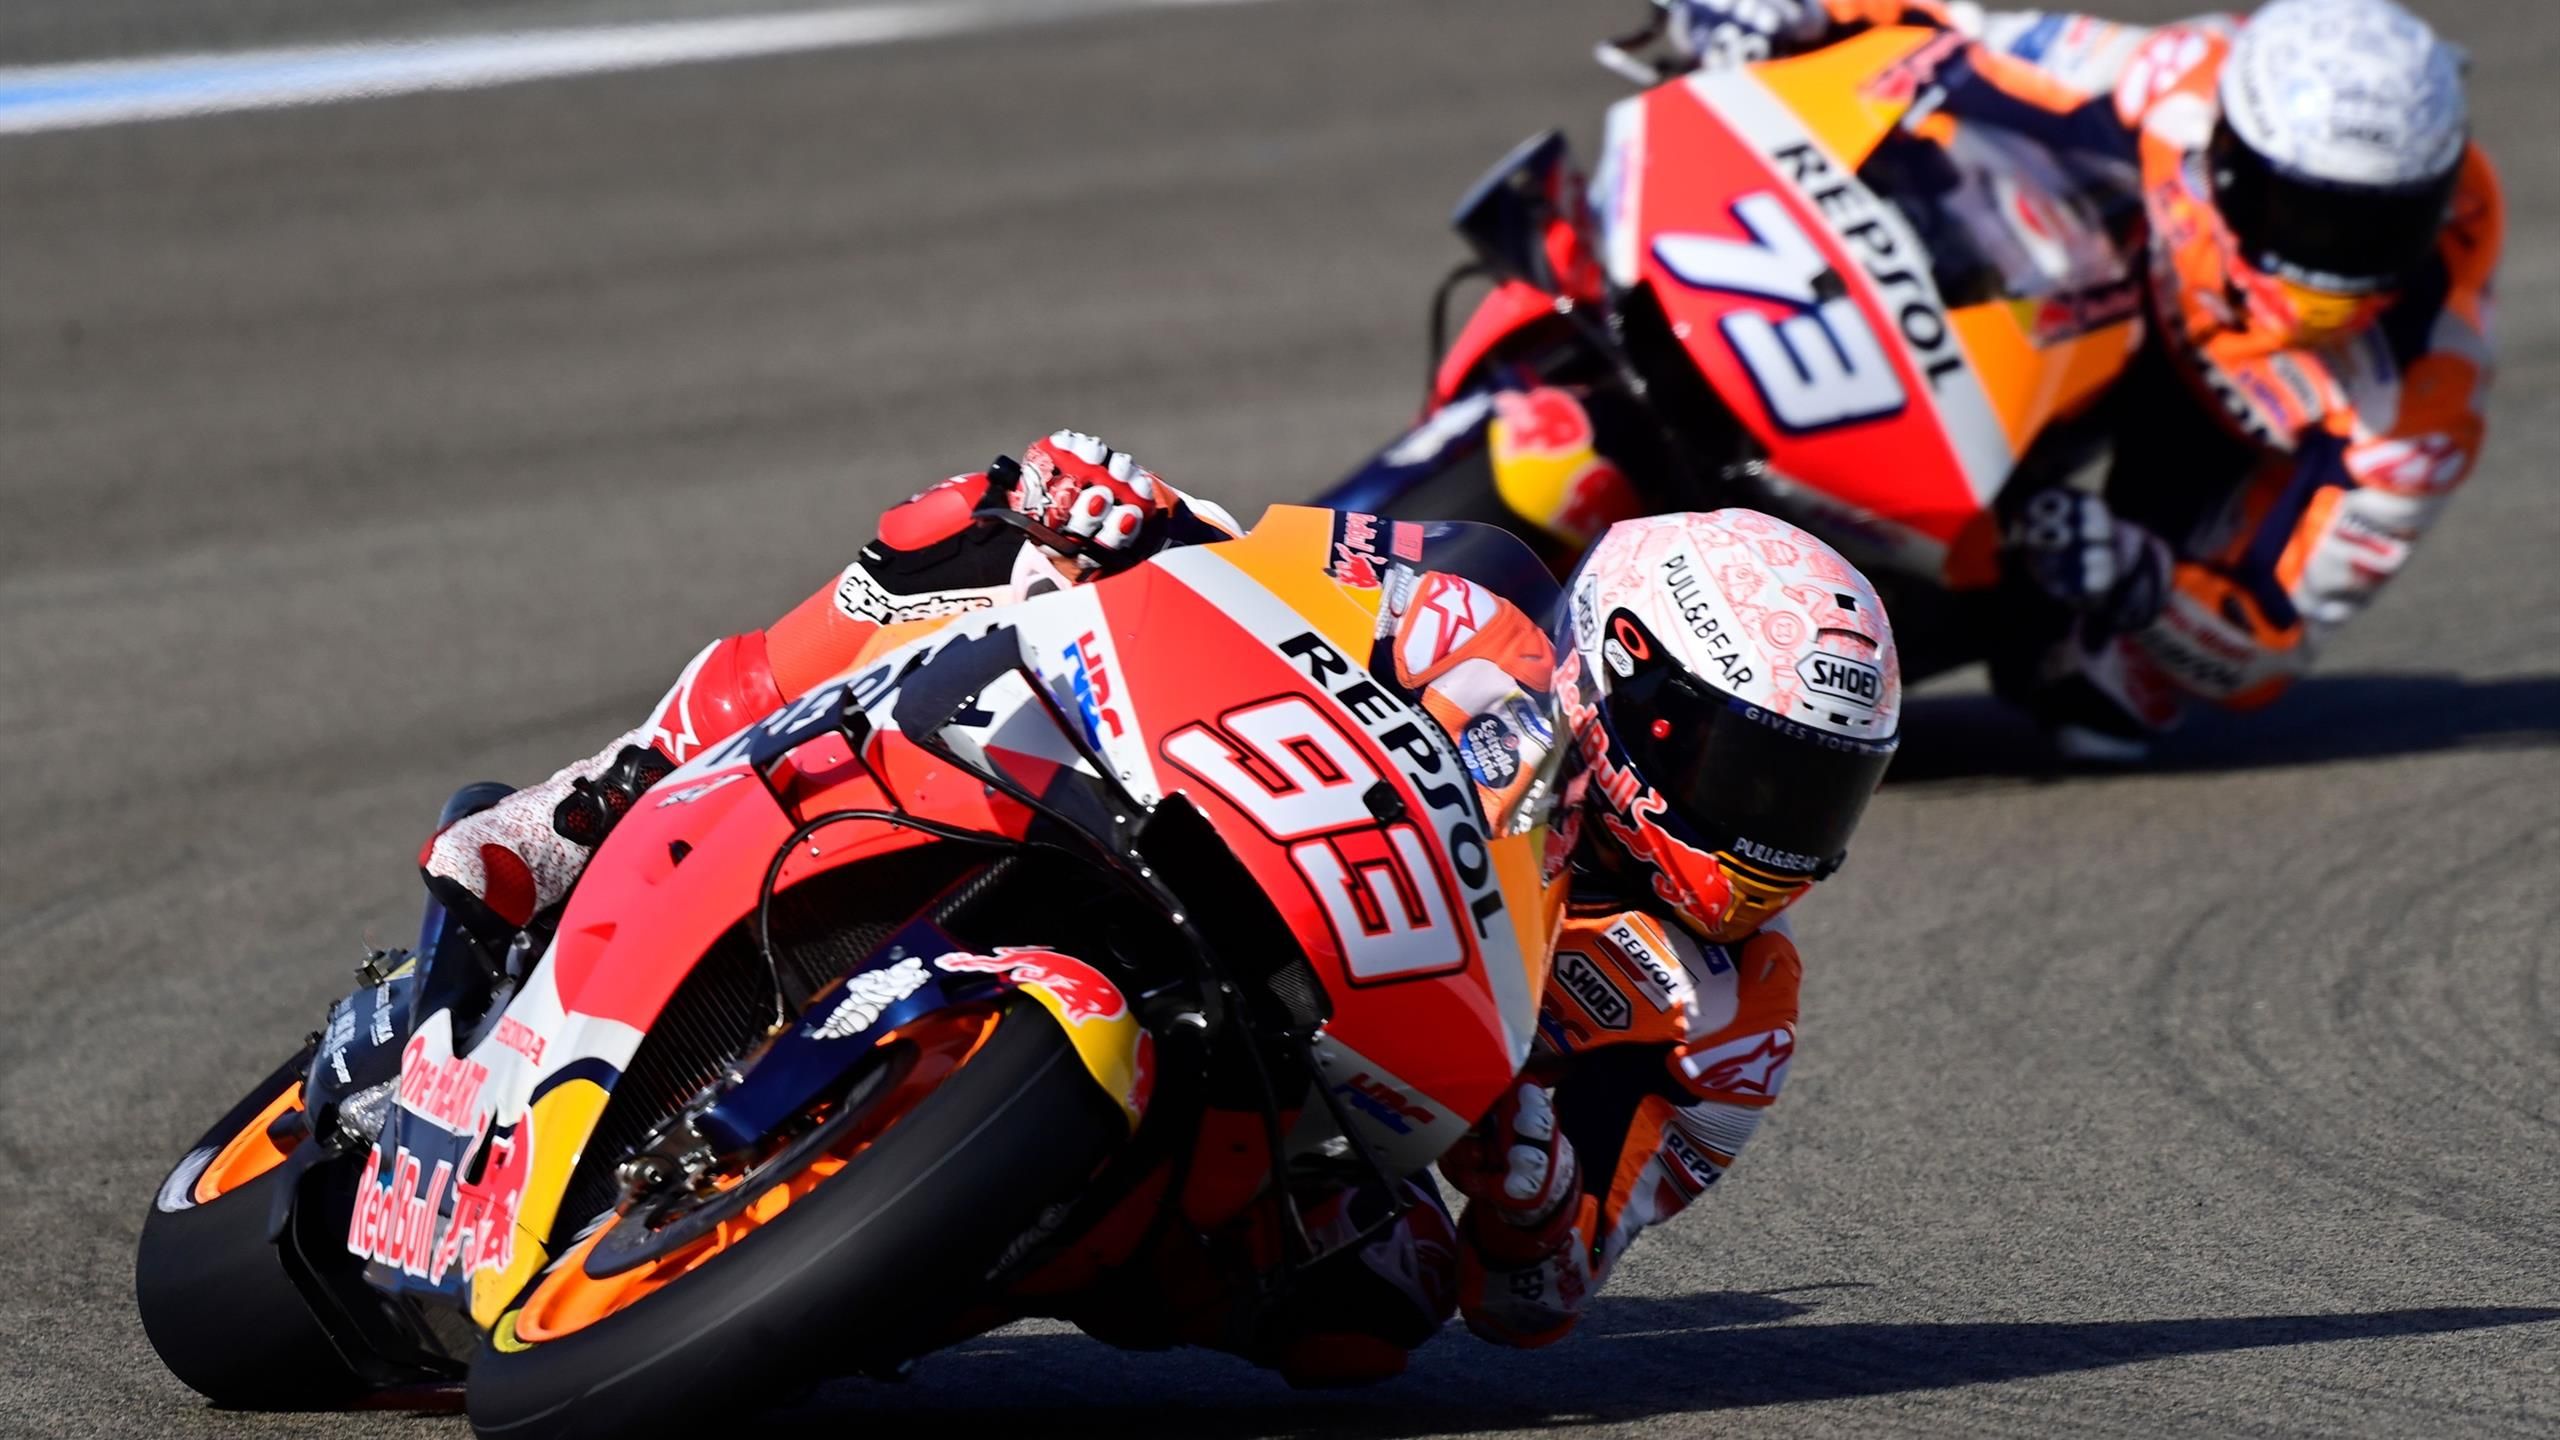 MotoGP Der Große Preis von Spanien live im TV und im Livestream